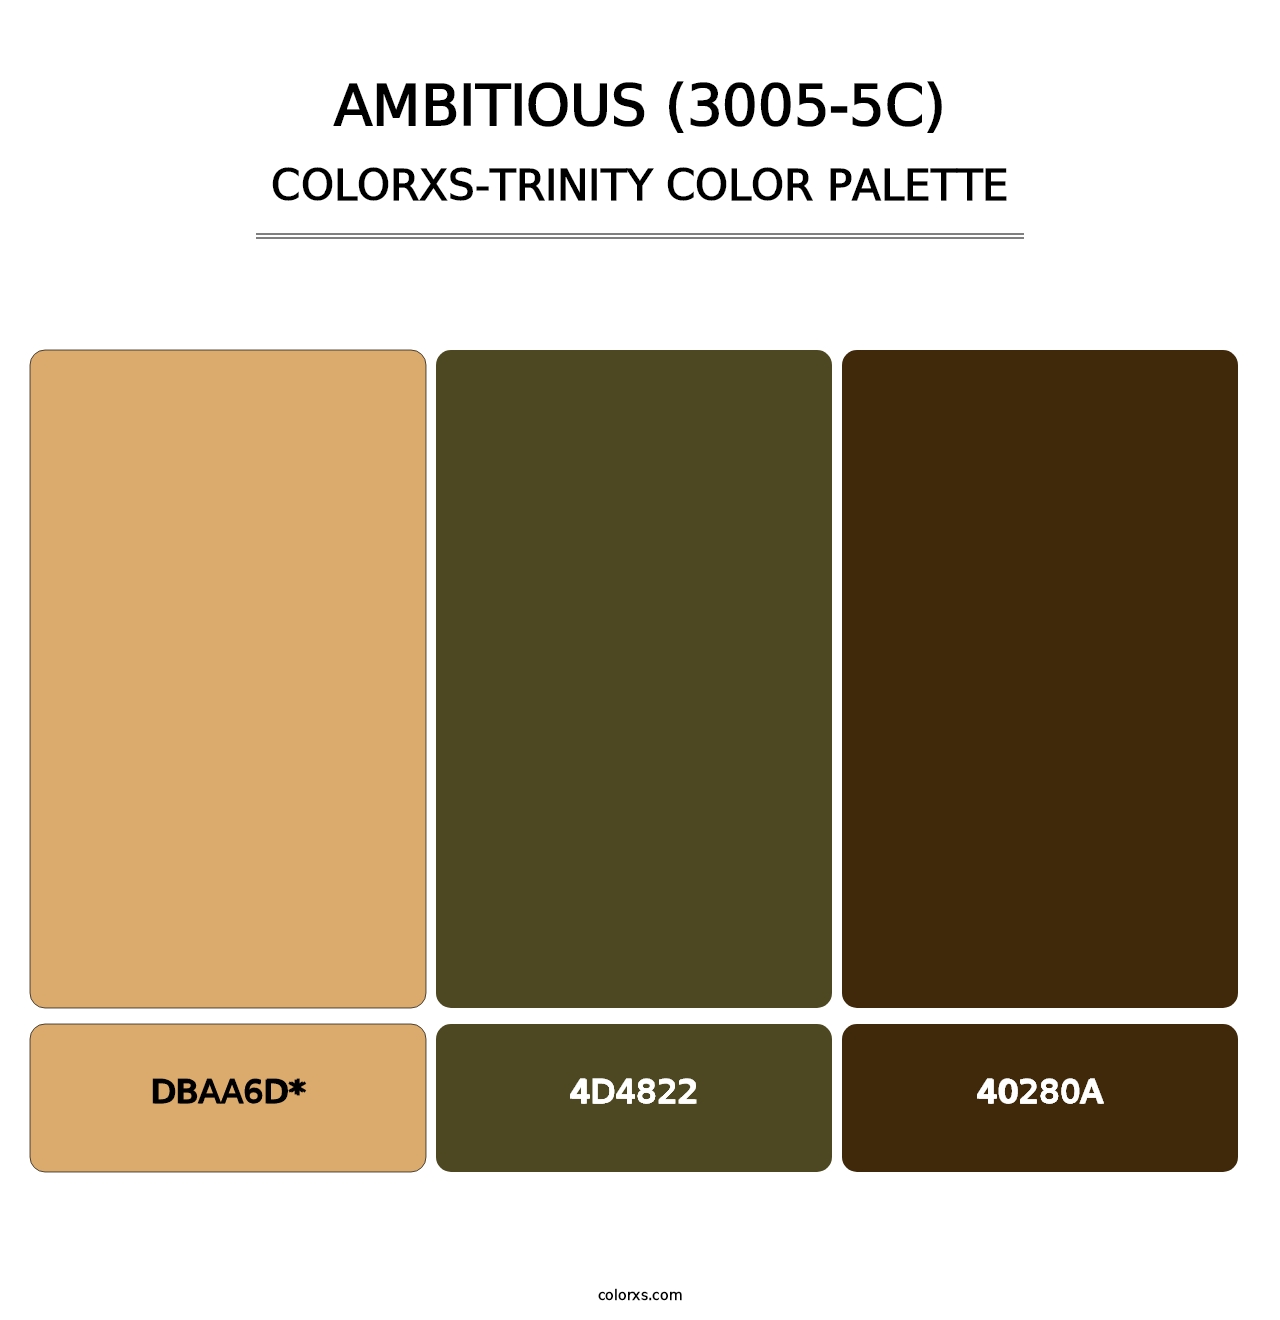 Ambitious (3005-5C) - Colorxs Trinity Palette